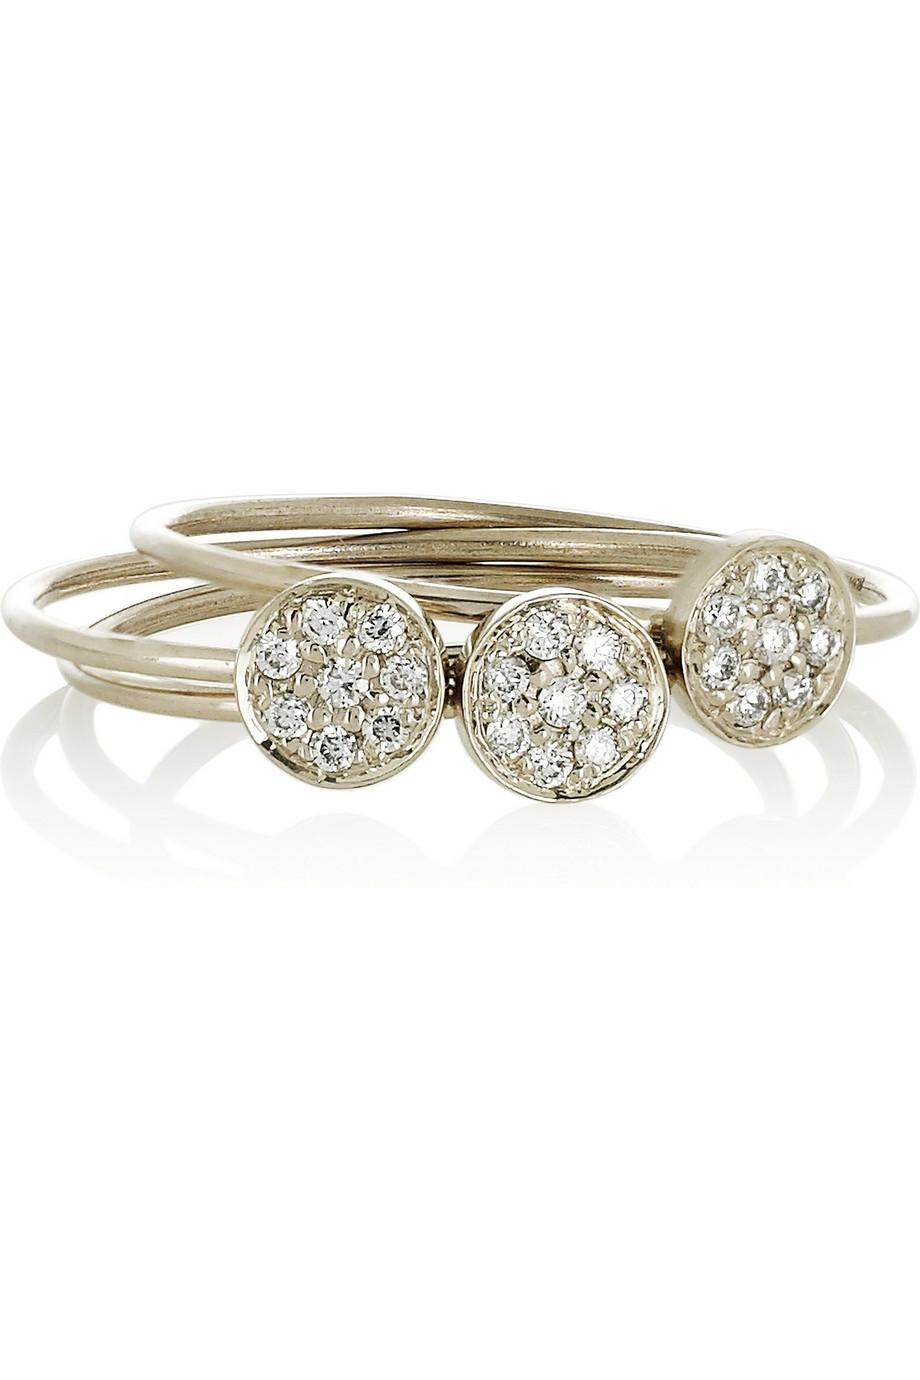 Jennifer Meyer gold and diamond stacking rings, jennifer meyer jewelry